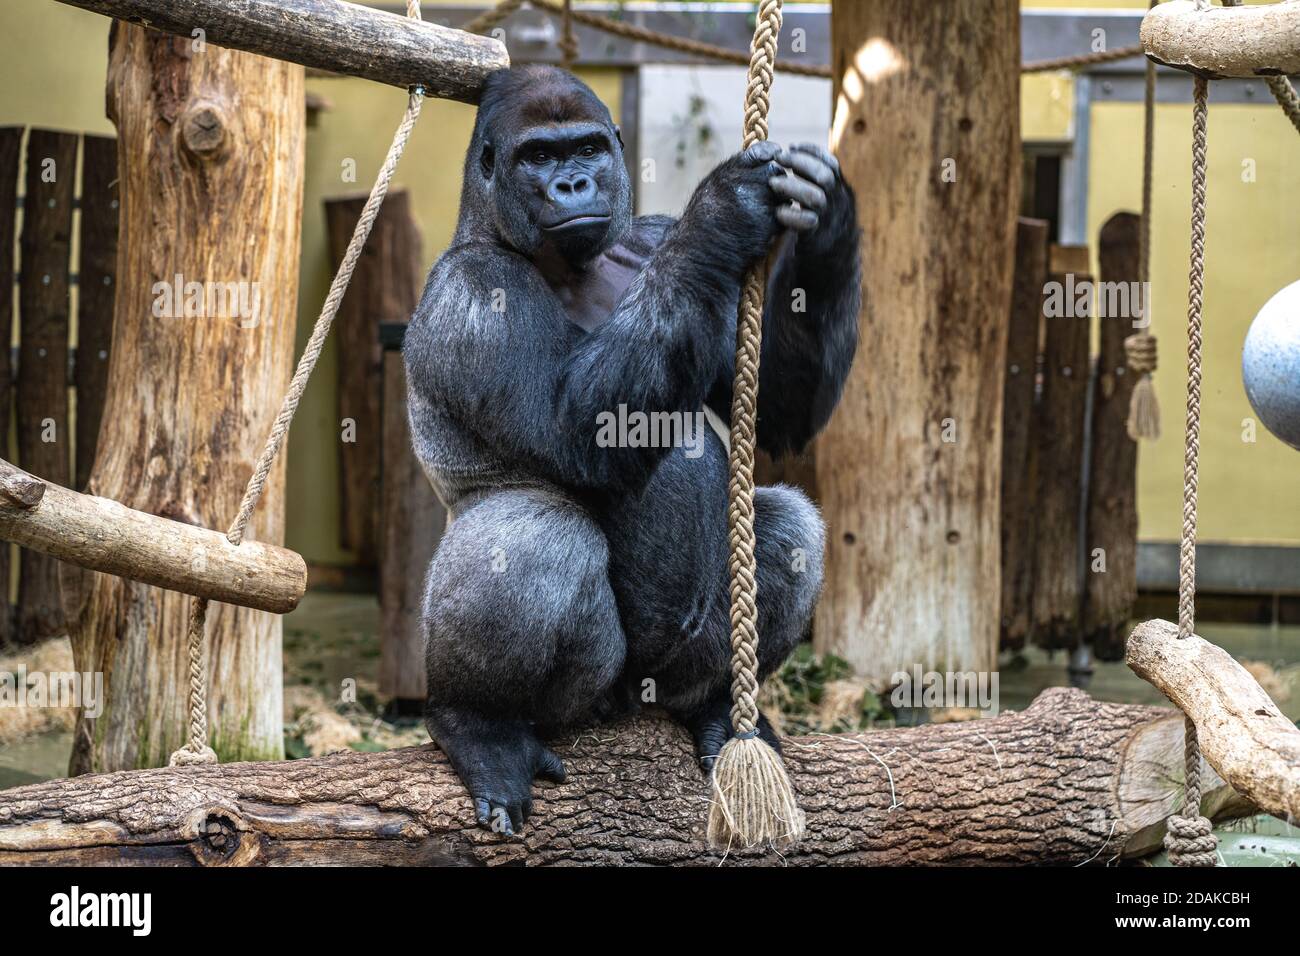 Gorilla è seduto vicino alla corda e la tiene. Primo piano di gorilla nello zoo. Foto Stock